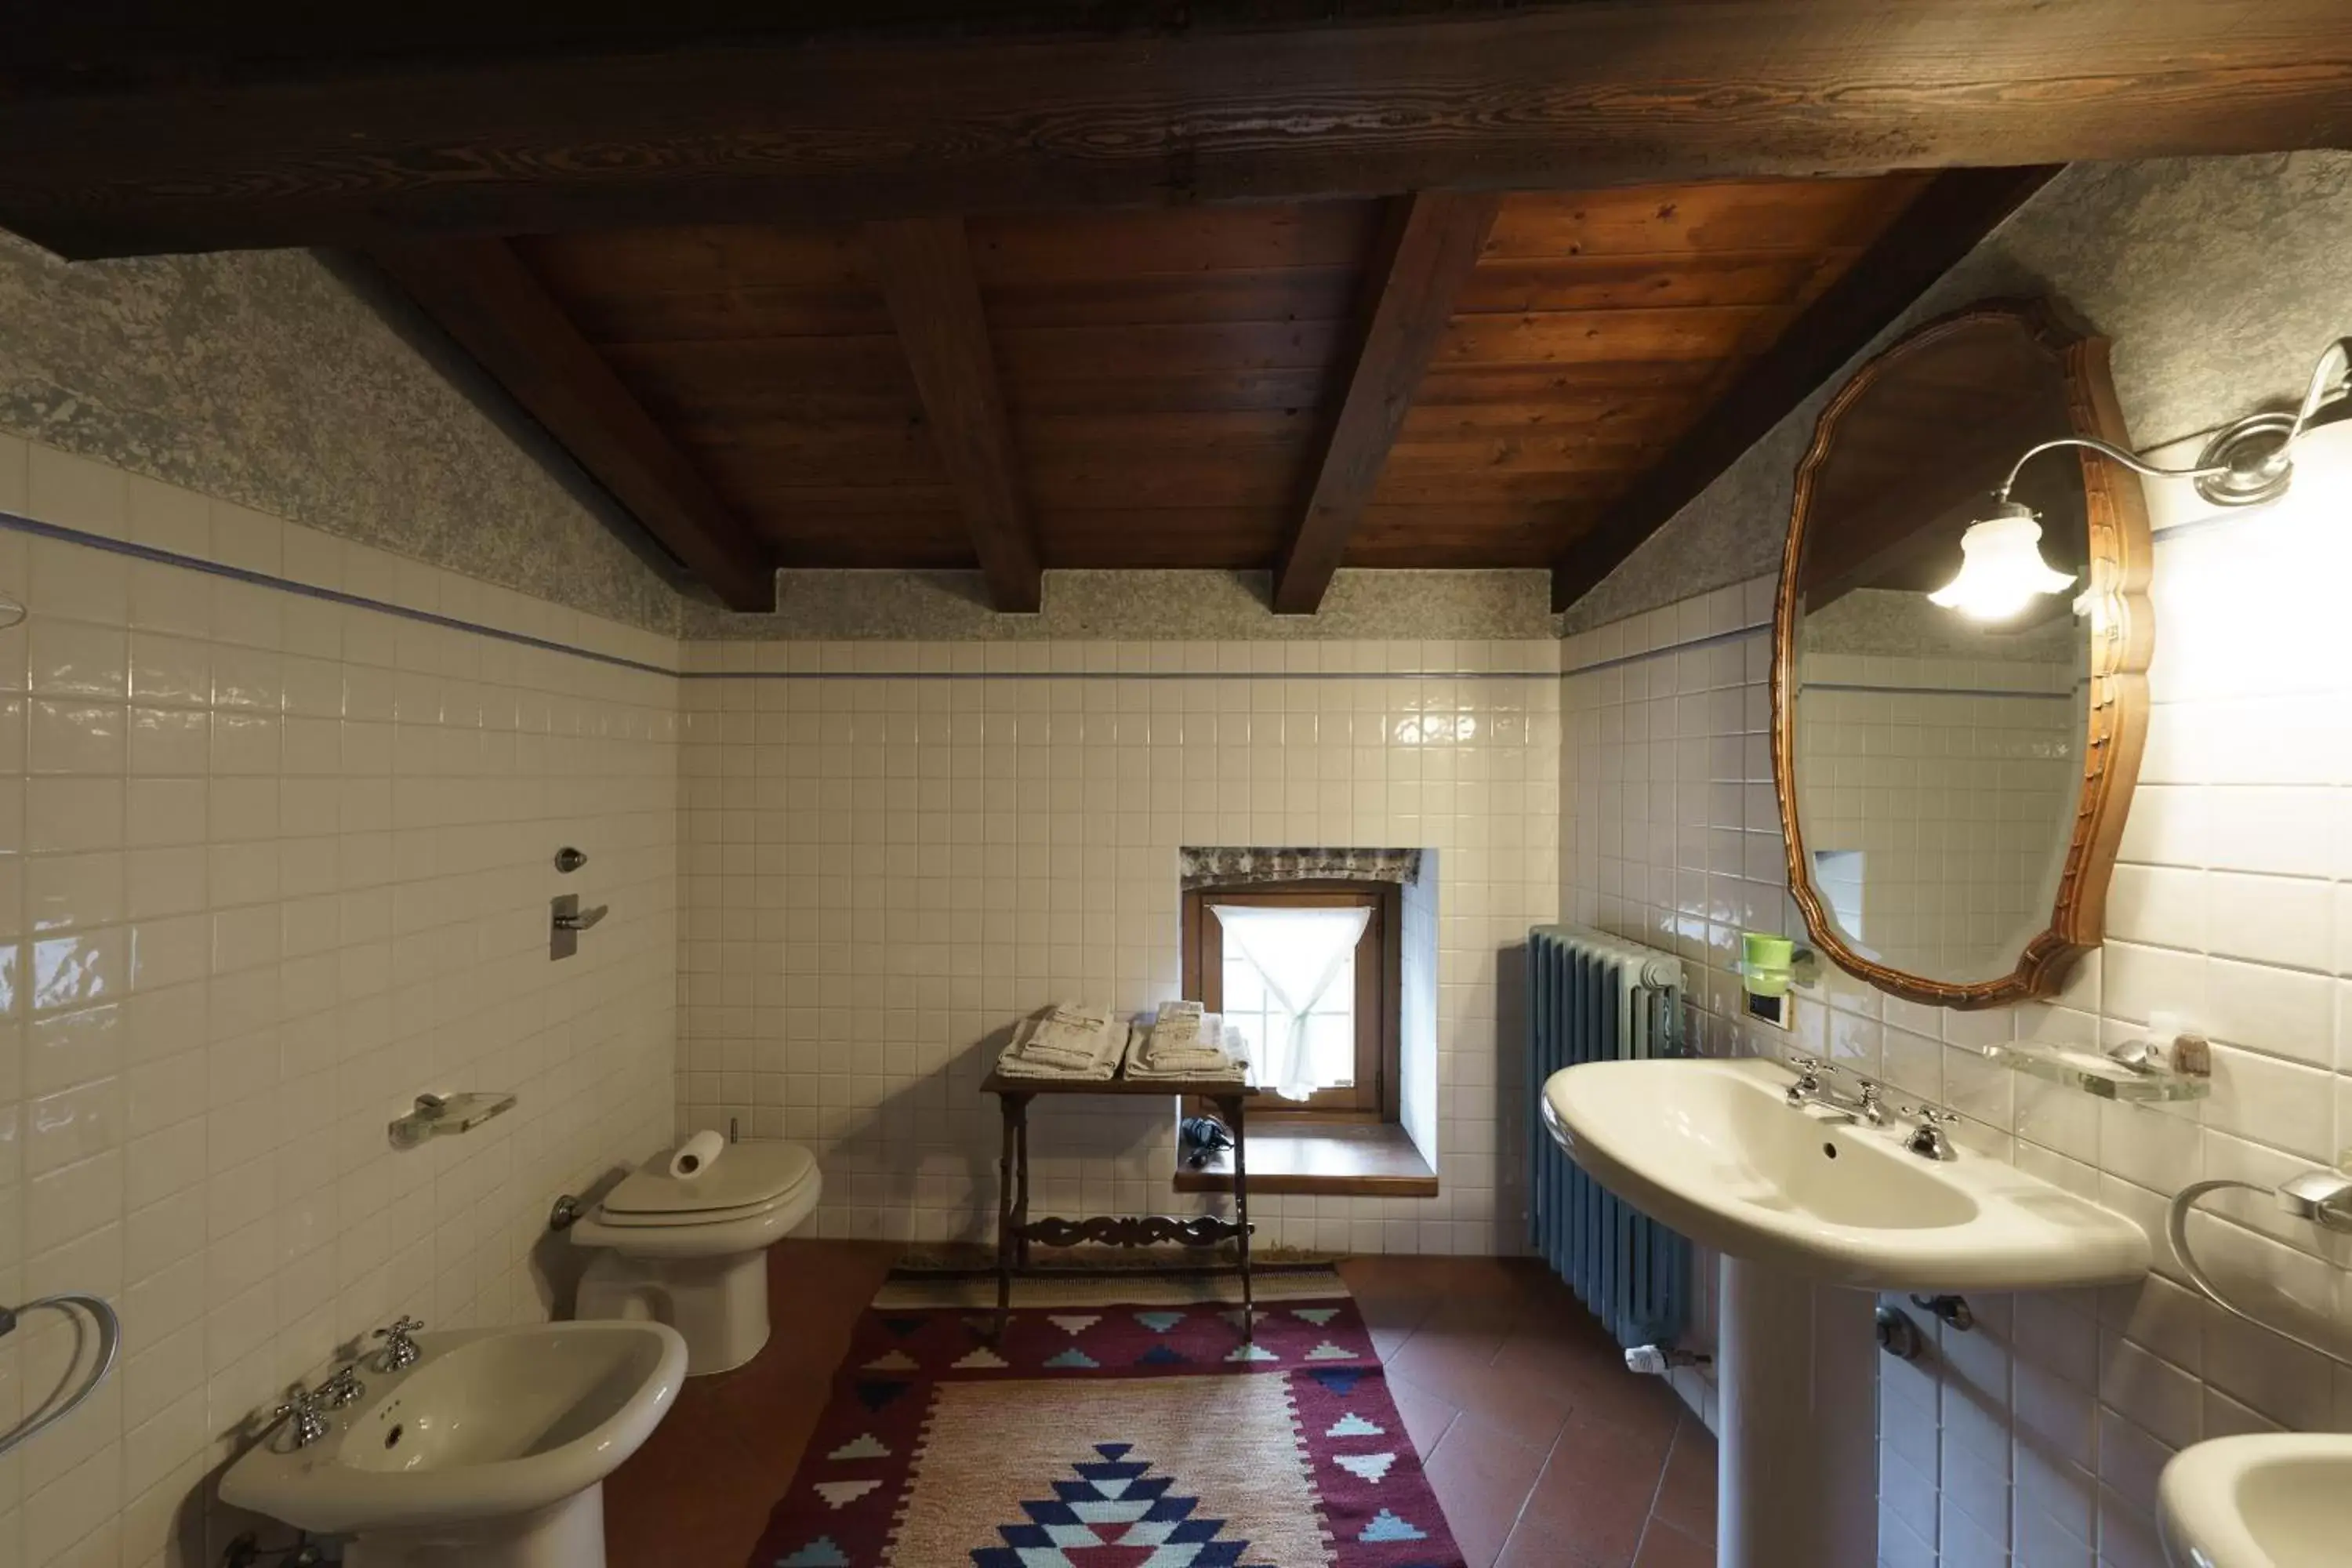 Toilet, Bathroom in Castello di Cernusco Lombardone